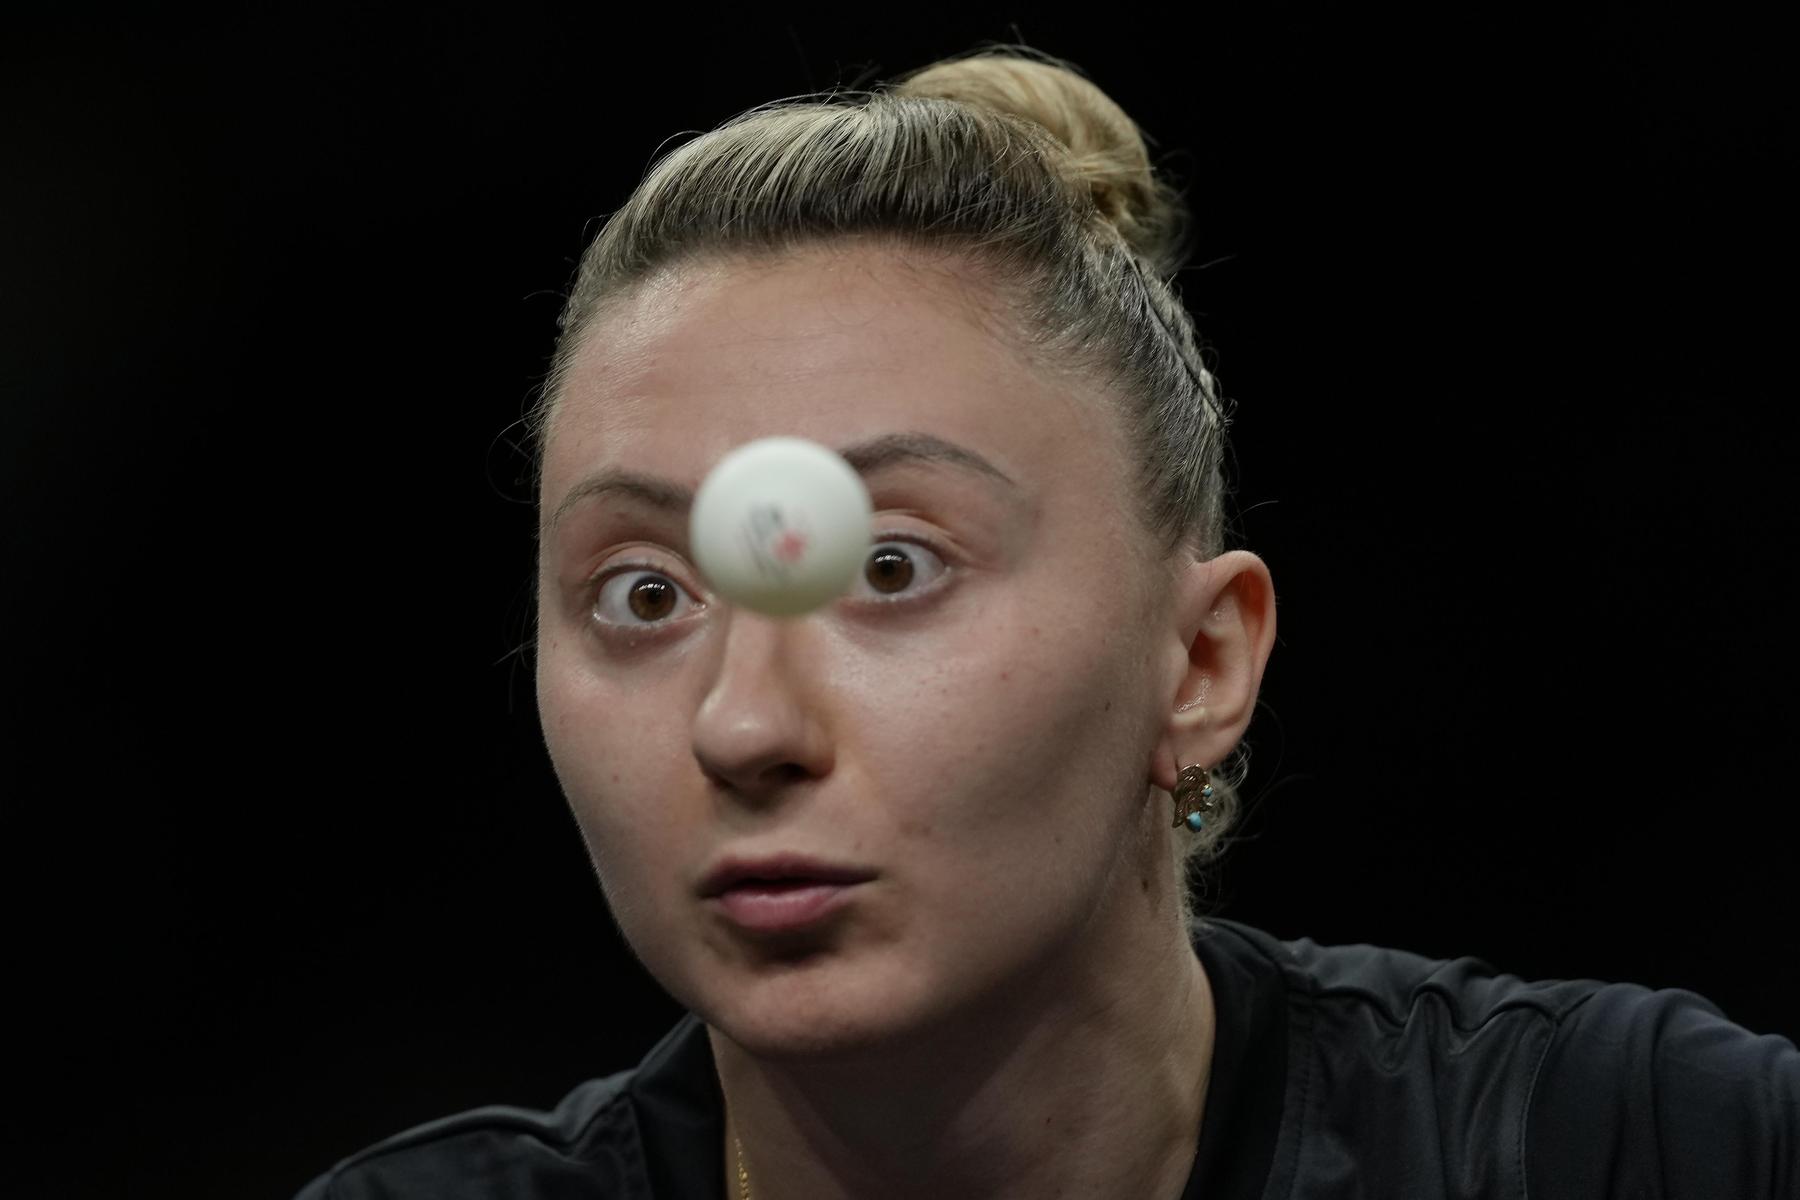 Sofia Polcanova im Tischtennis-Viertelfinale chancenlos